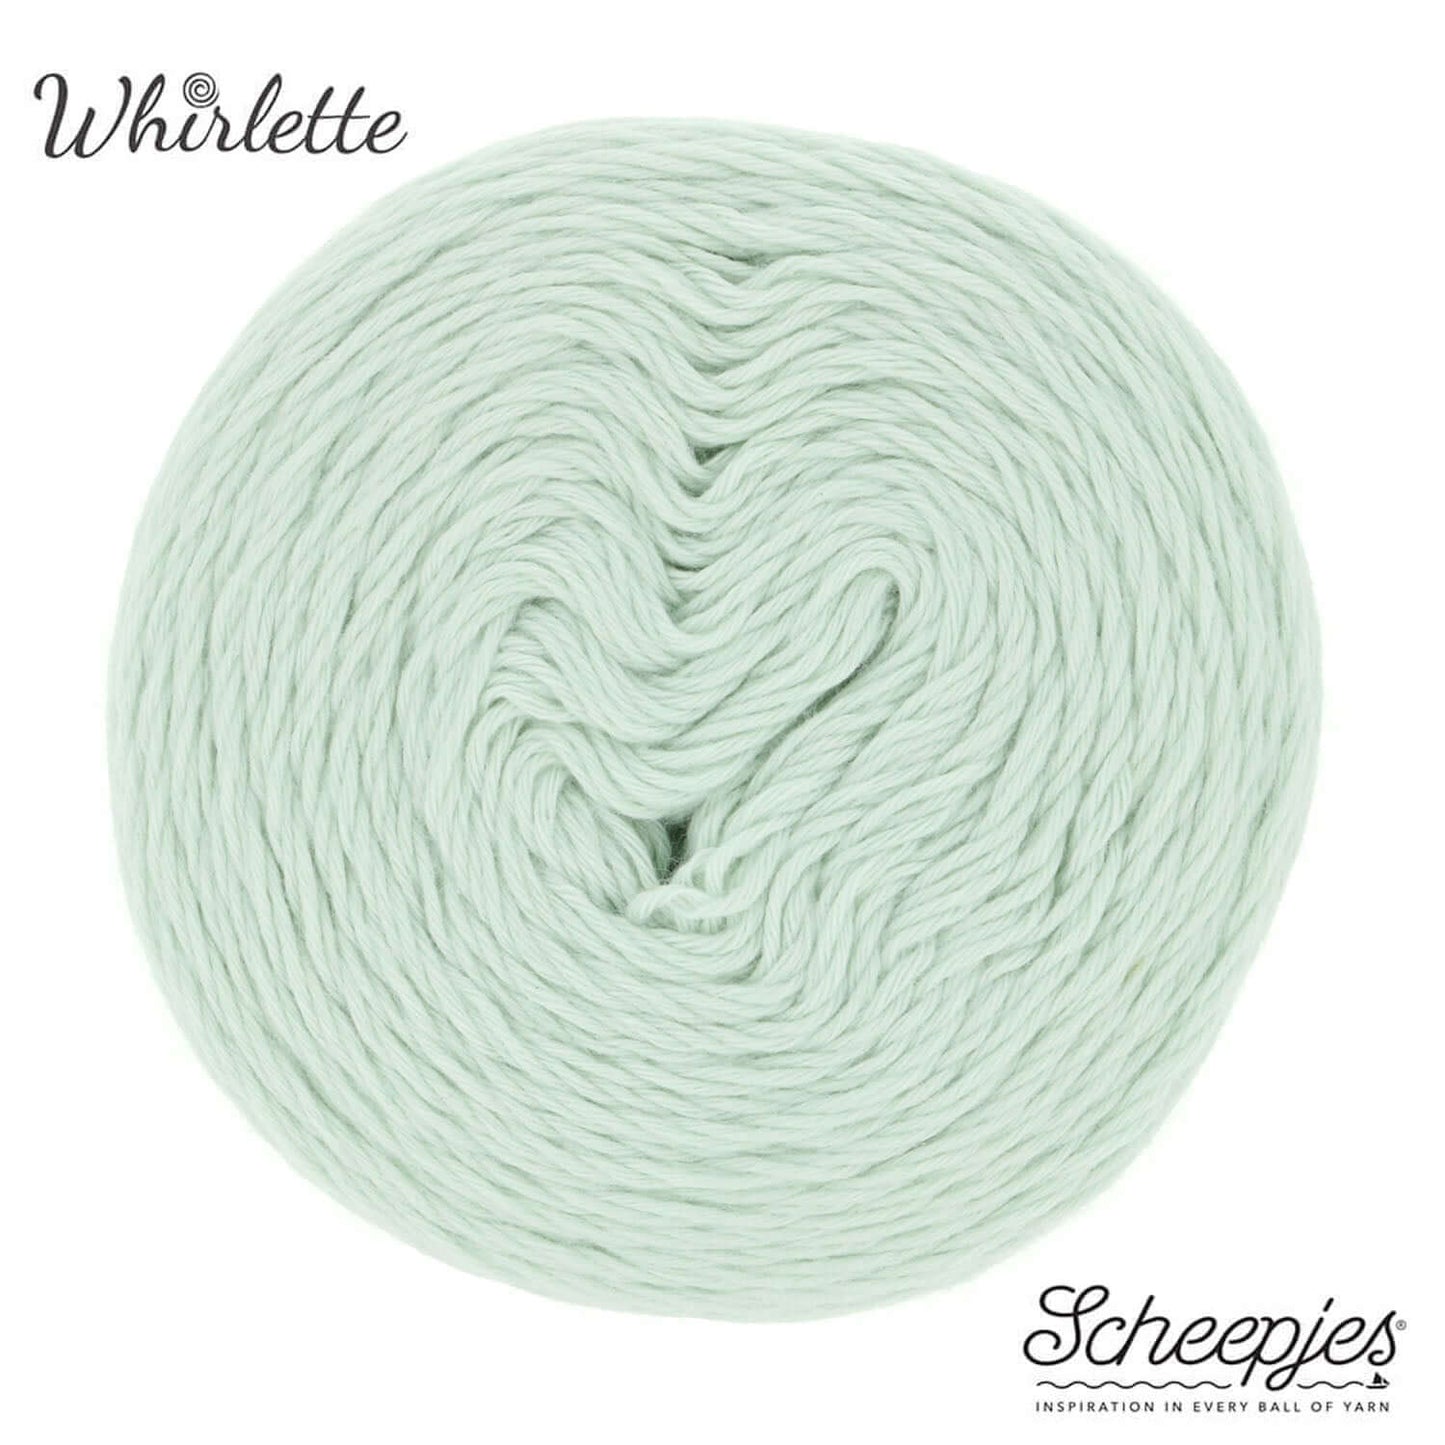 Scheepjes Whirlette - 856 Mint